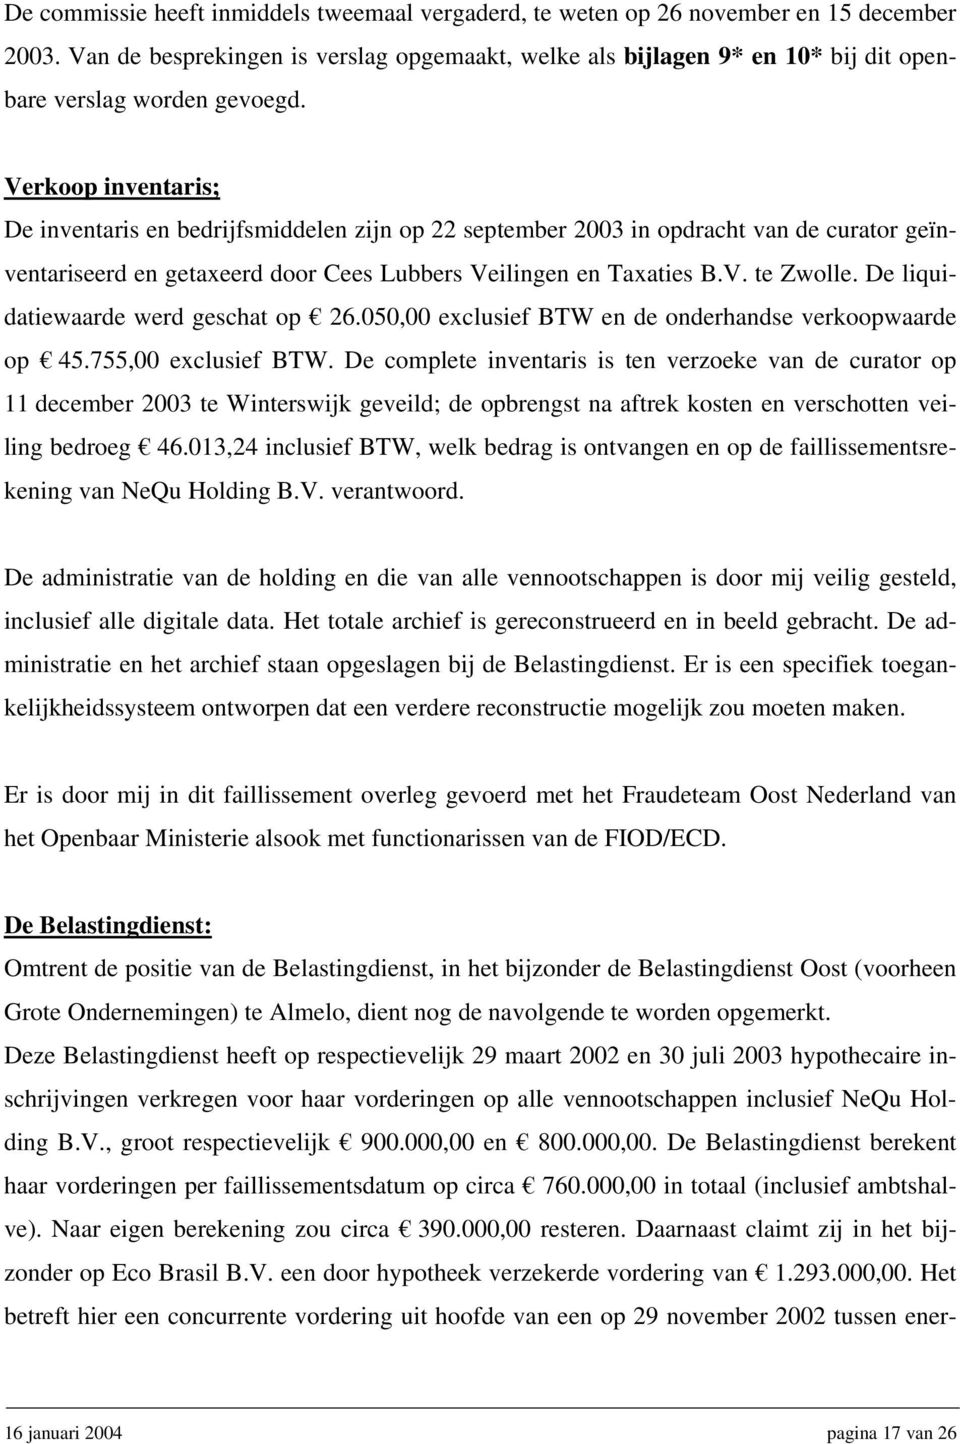 Verkoop inventaris; De inventaris en bedrijfsmiddelen zijn op 22 september 2003 in opdracht van de curator geïnventariseerd en getaxeerd door Cees Lubbers Veilingen en Taxaties B.V. te Zwolle.